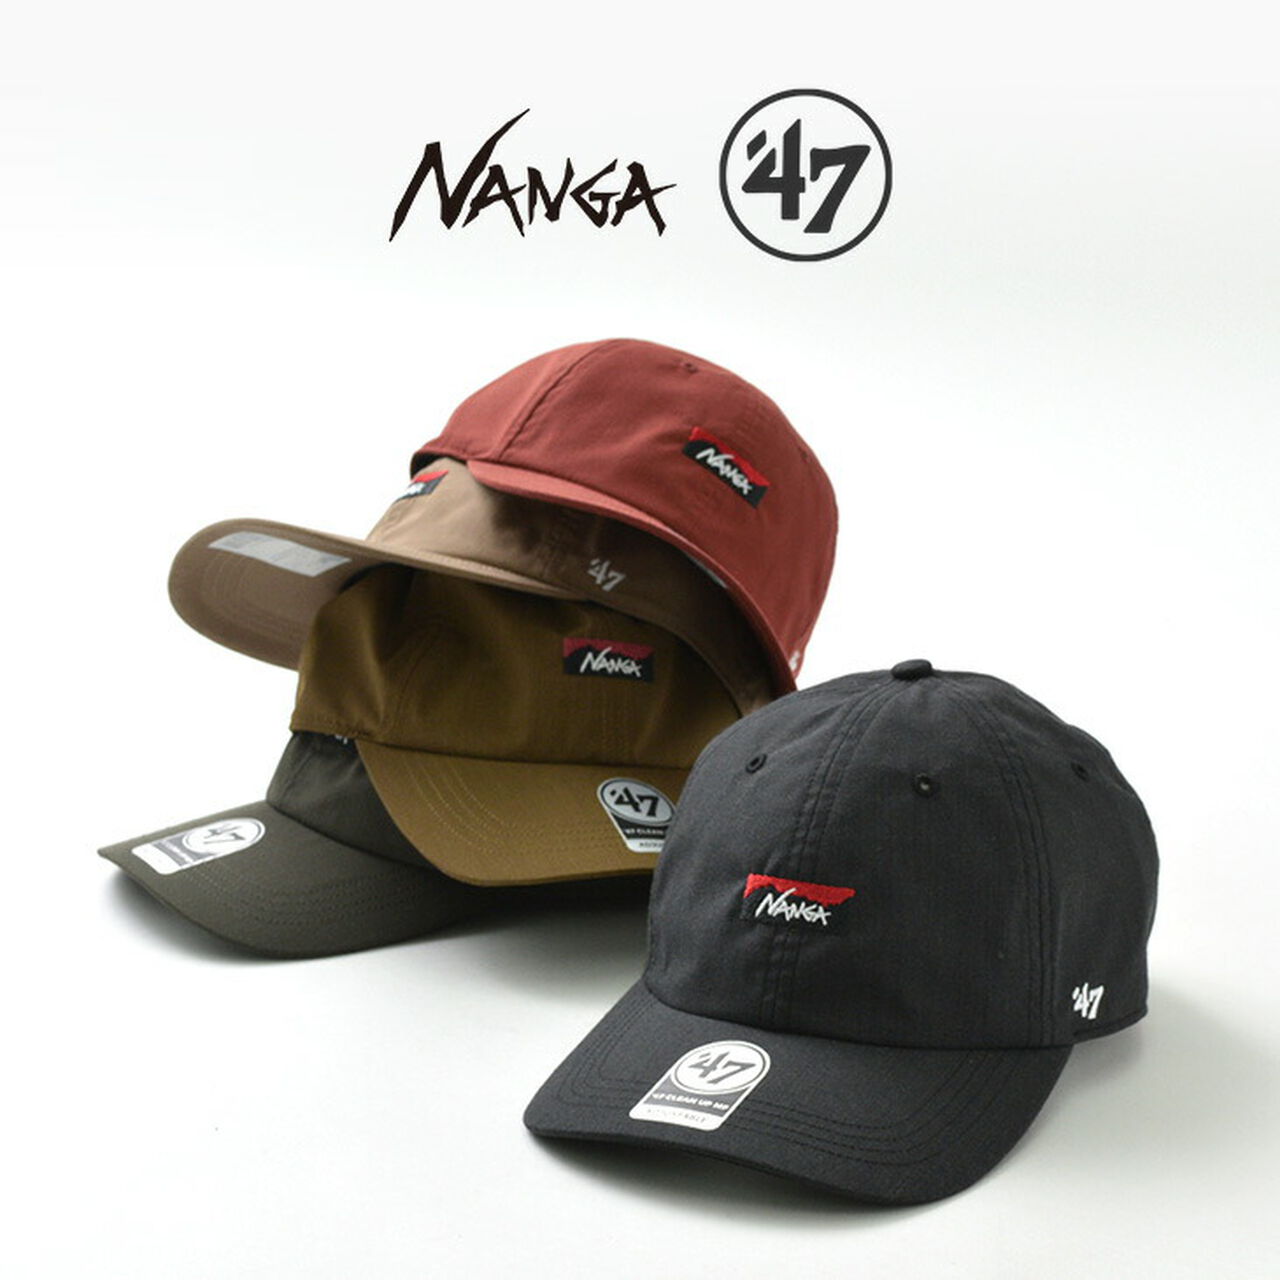 NANGA×47 HINOC CAP,, large image number 0